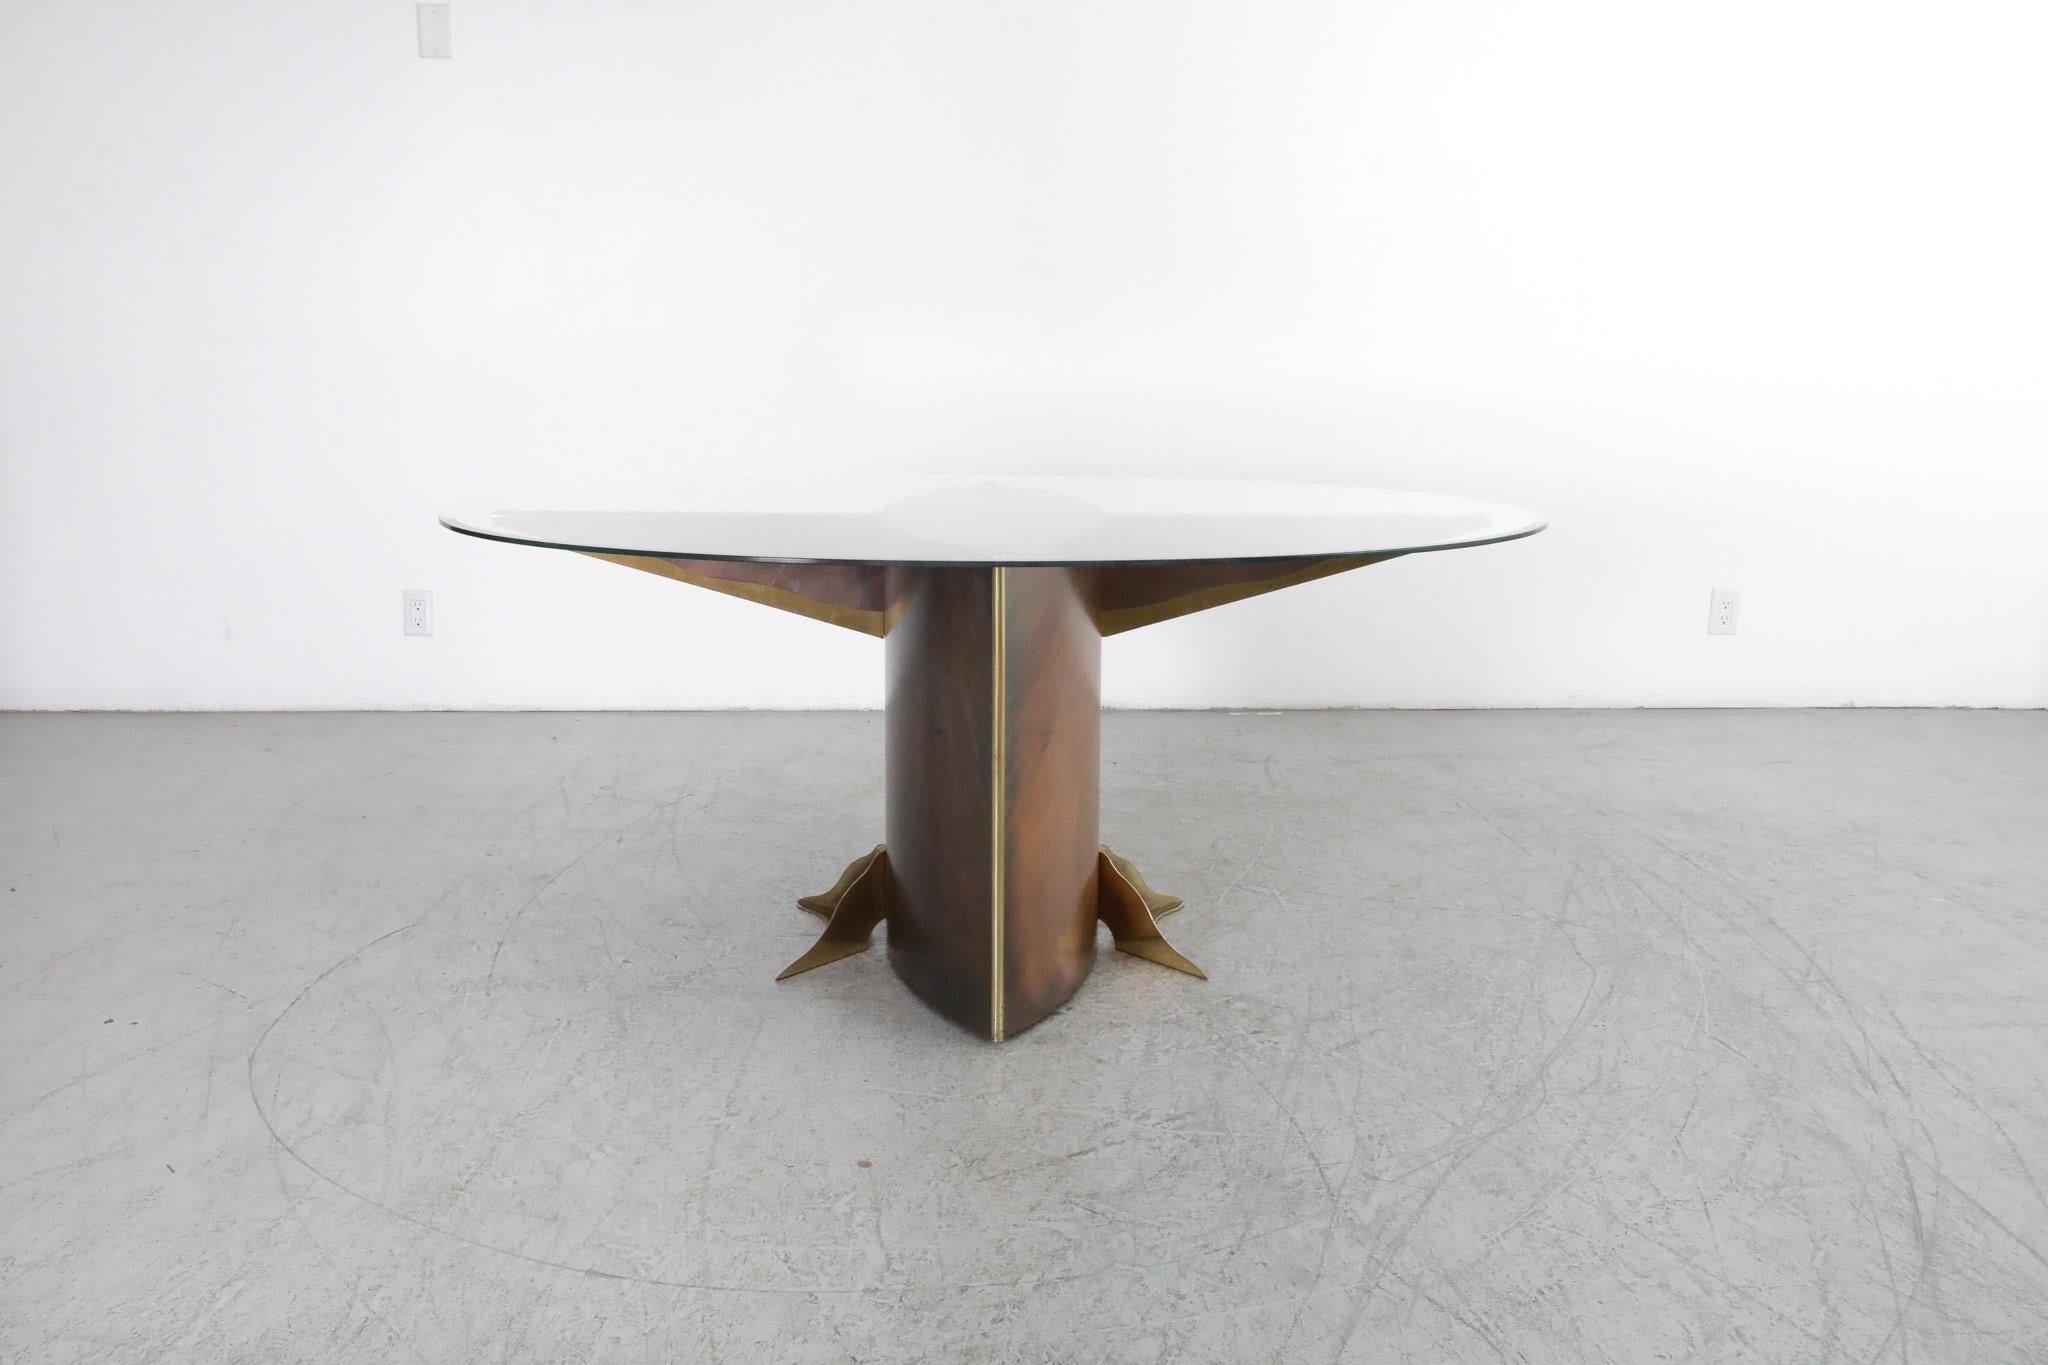 Superbe table de salle à manger ovale en verre, fabriquée par Belgo Chrom dans les années 1980, avec une base en métal bronzé et des détails en laiton plaqué or. Le plateau en verre nouvellement installé présente un bord biseauté inversé et peut